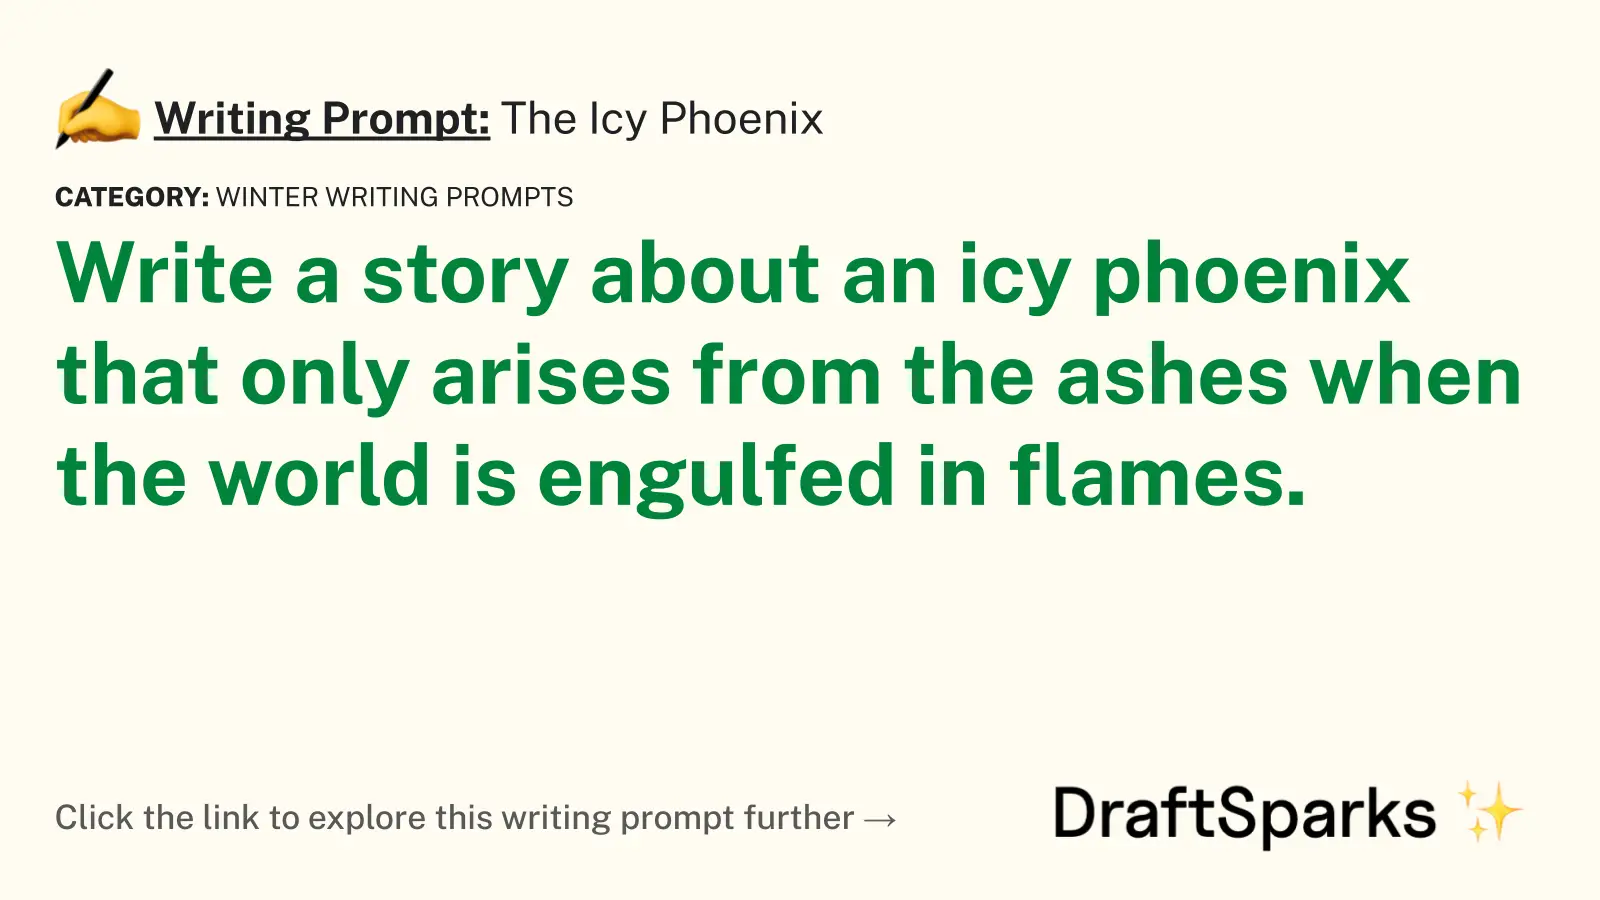 The Icy Phoenix